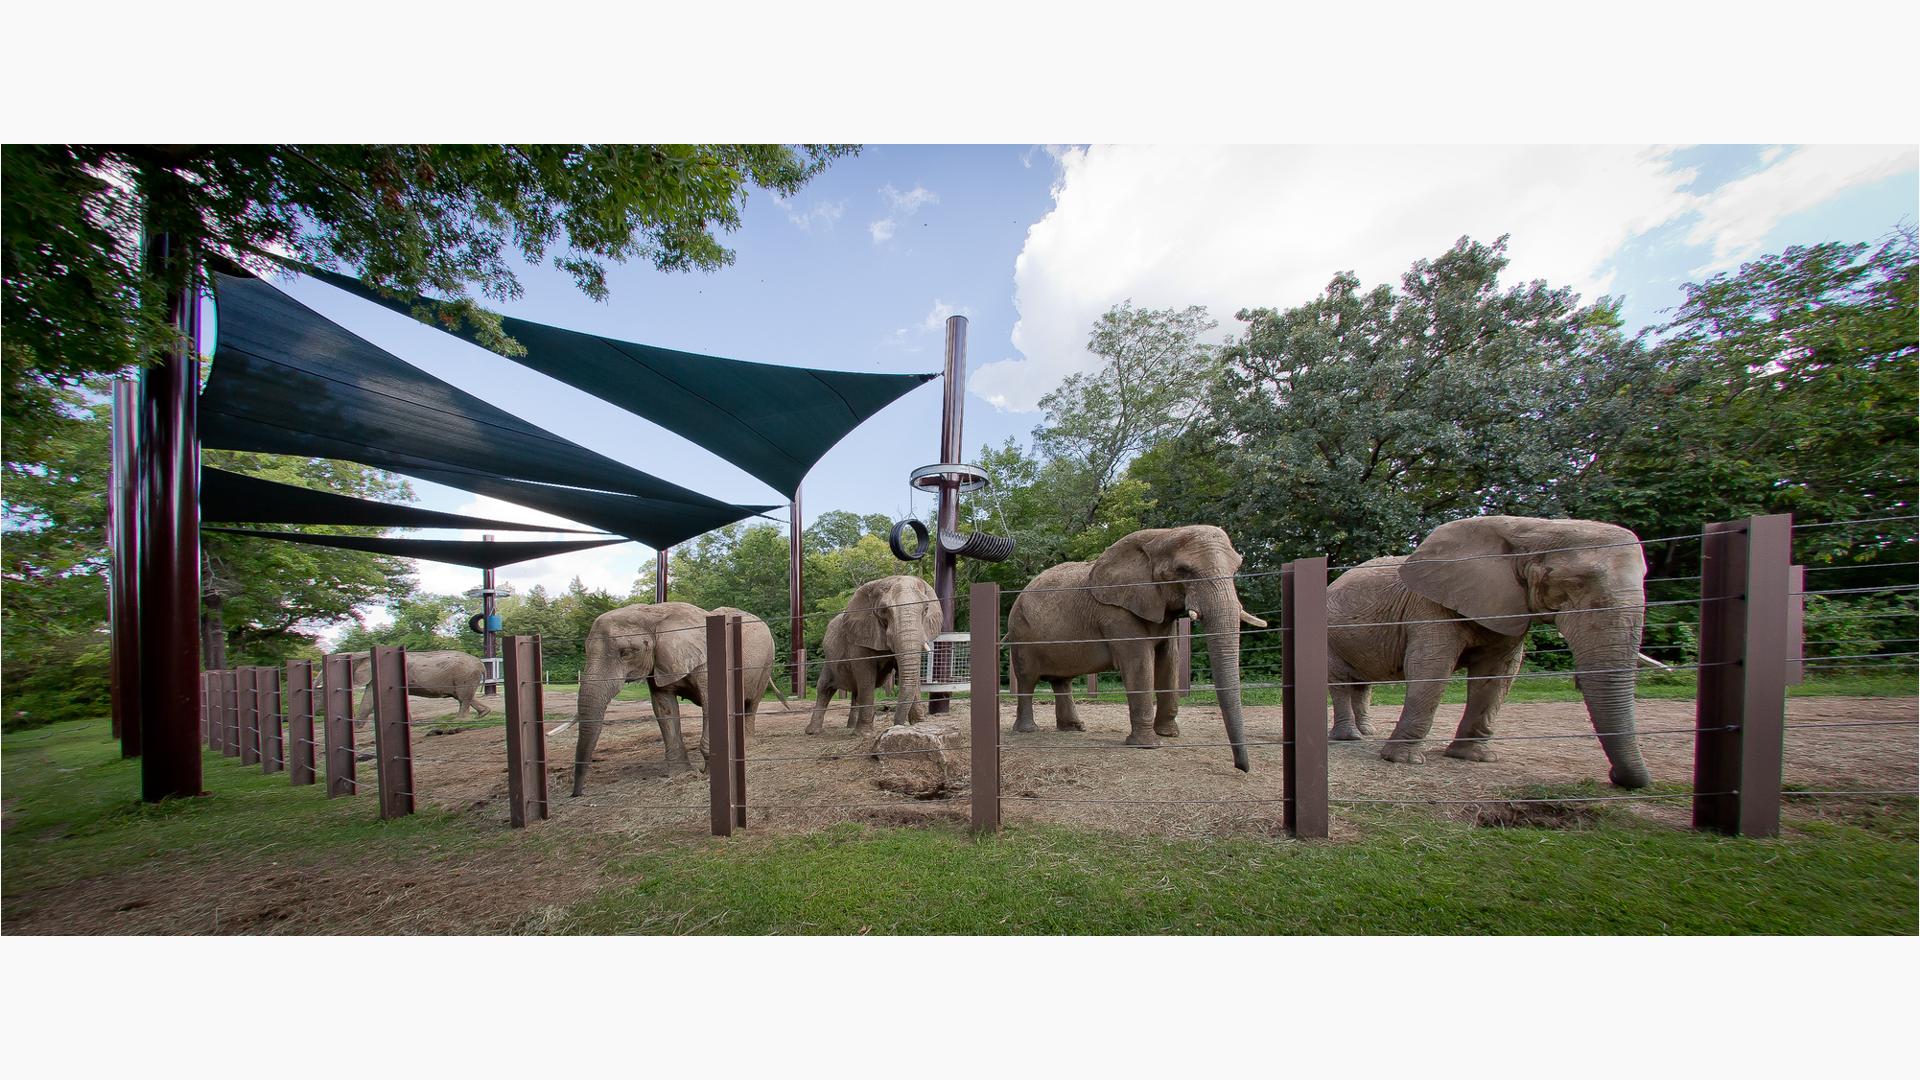 Elephants at the Kansas City Zoo. Kansas City, MO.